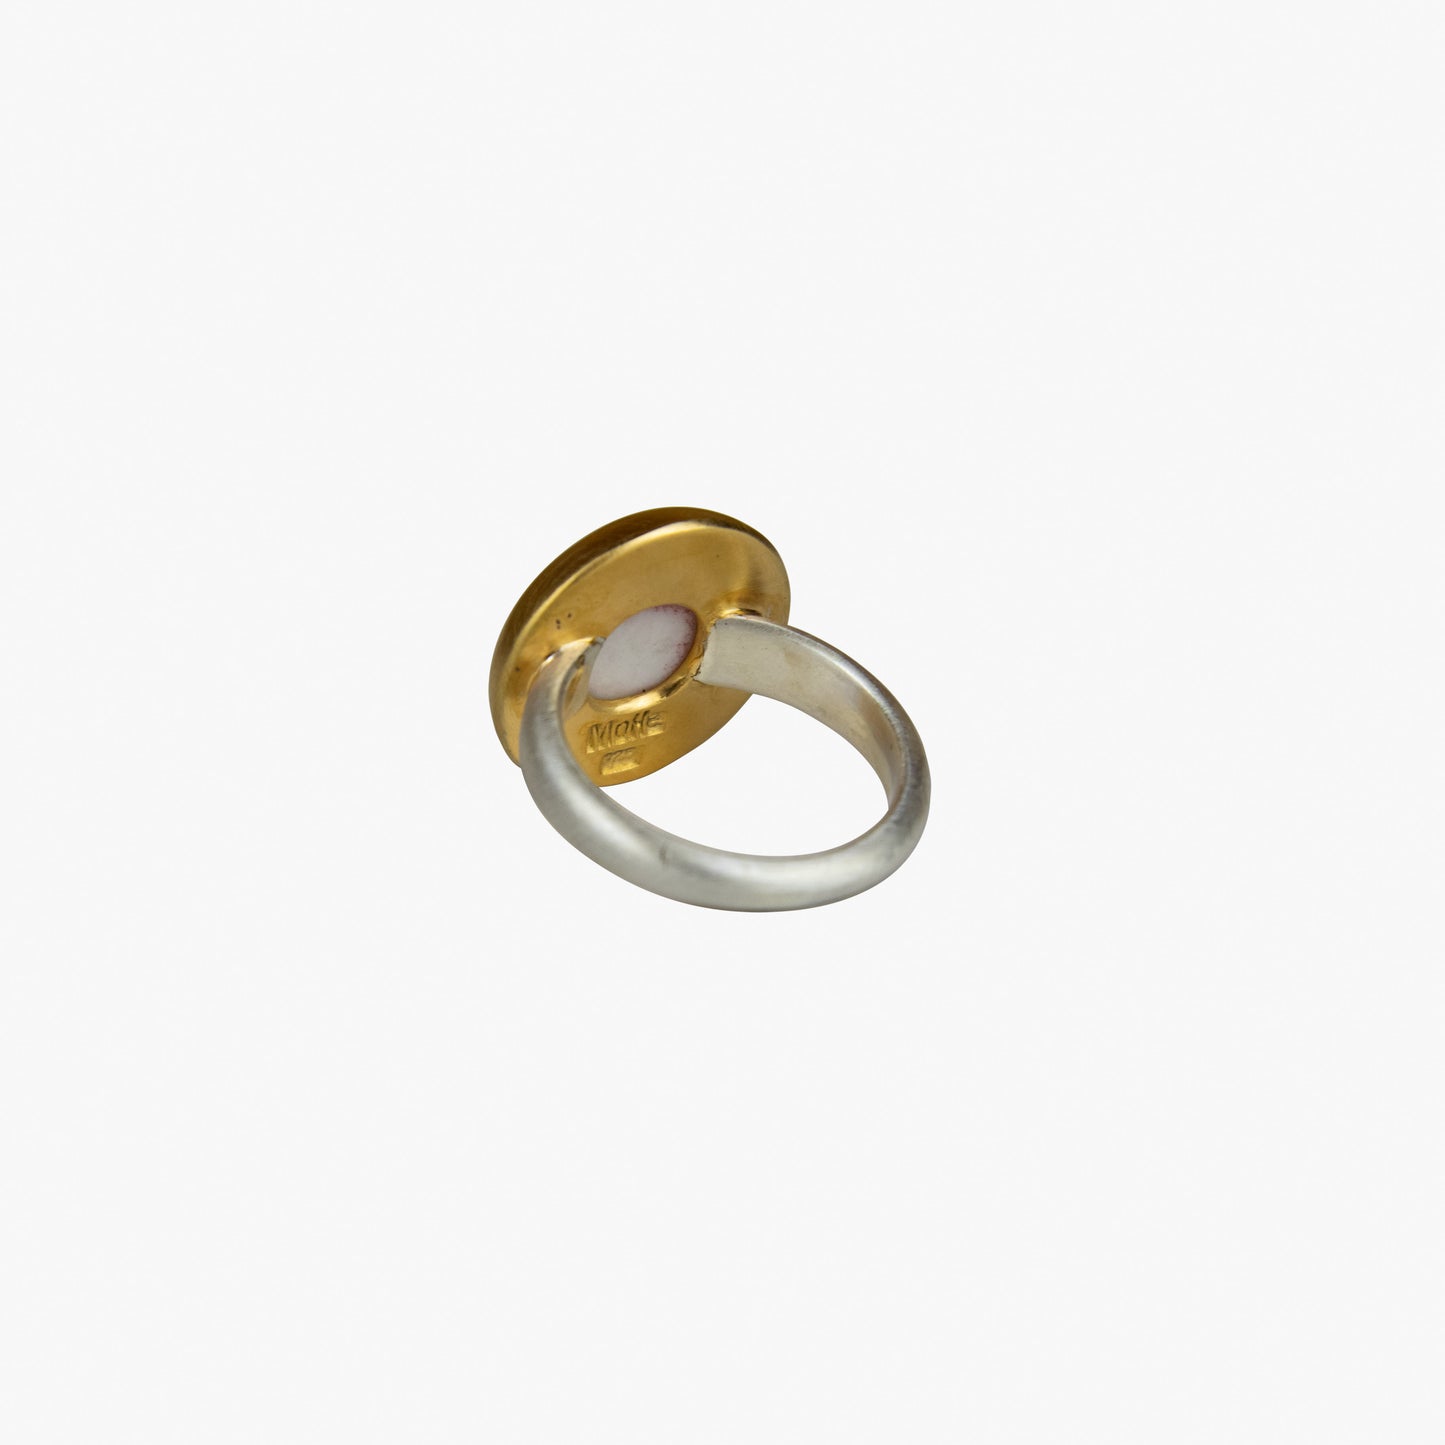 Der Ring OHM No.2 besteht aus Sterlingsilber, einer galvanischen Vergoldung sowie Porzellan